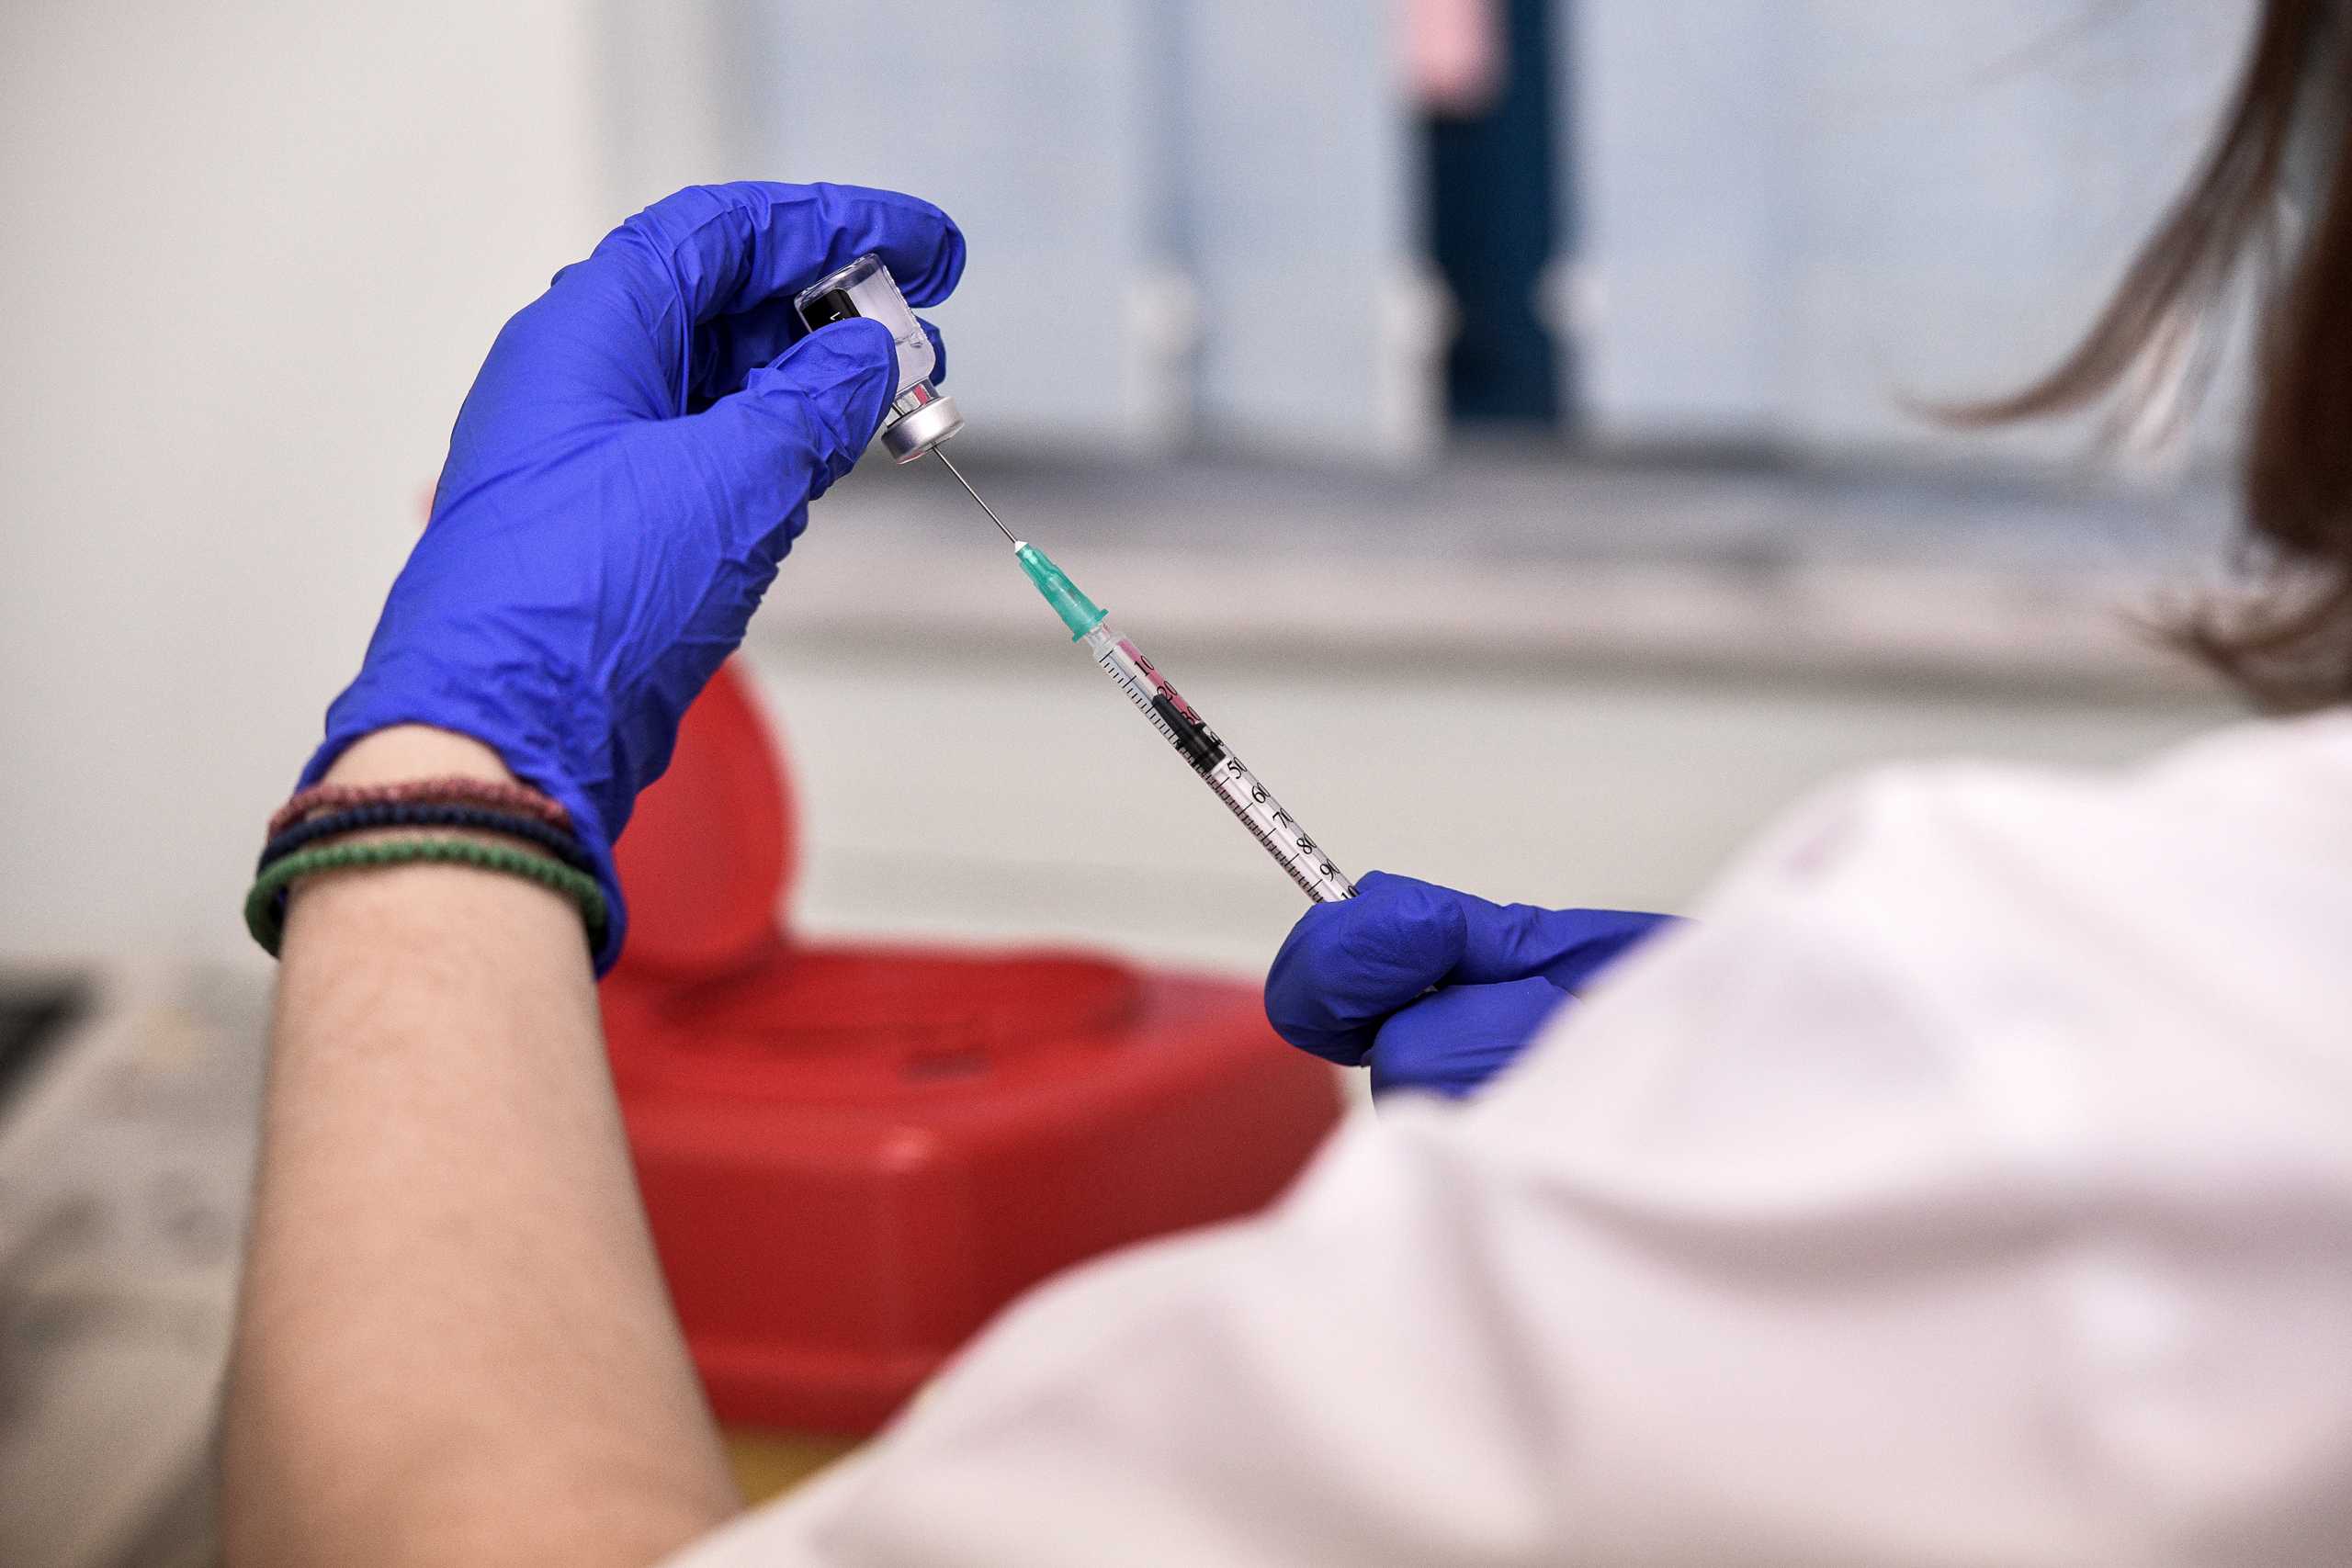 Παγκόσμια ανεπάρκεια και μεγάλες ελλείψεις απειλούν τους εμβολιασμούς κατά του κορονοϊού